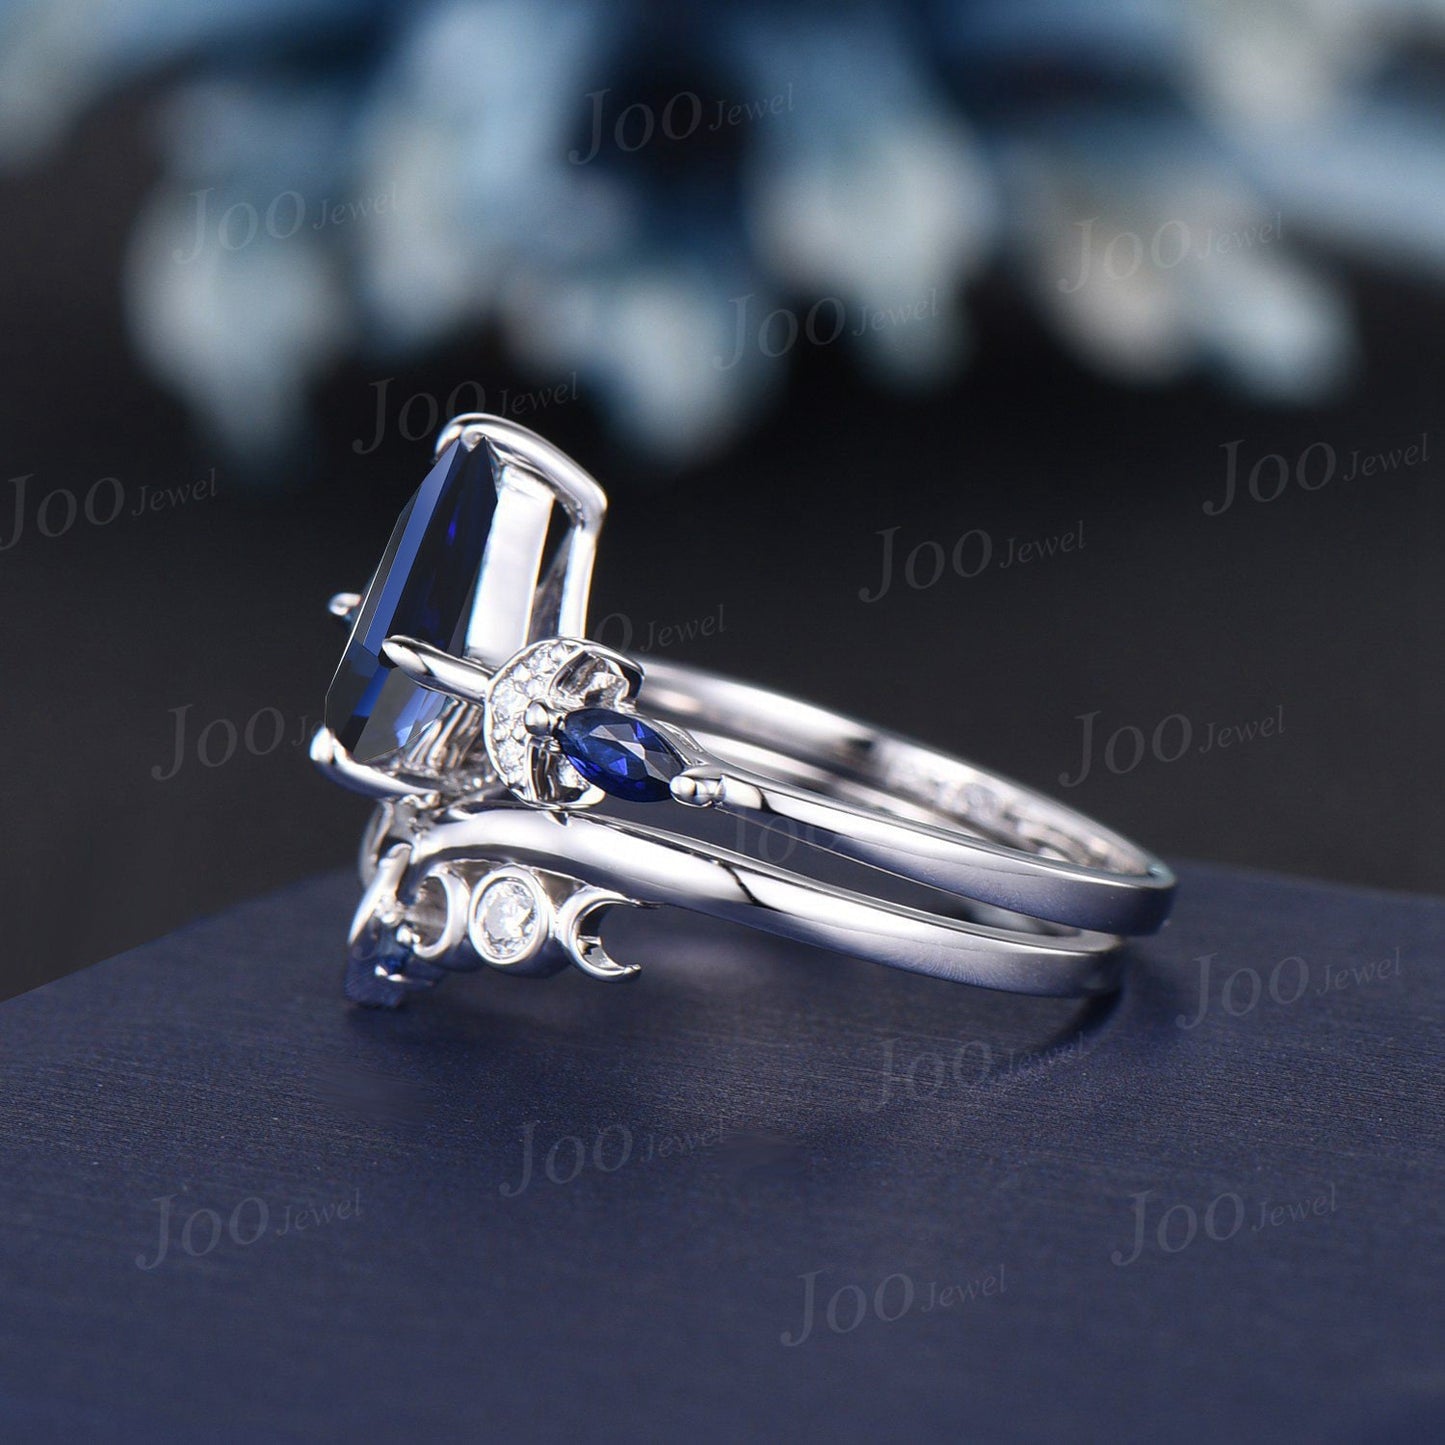 Kite Blue Sapphire Engagement Ring Set White Gold September Birthstone Wedding Ring Trinity Celtic Knot Blue Sapphire Moissanite Bridal Ring